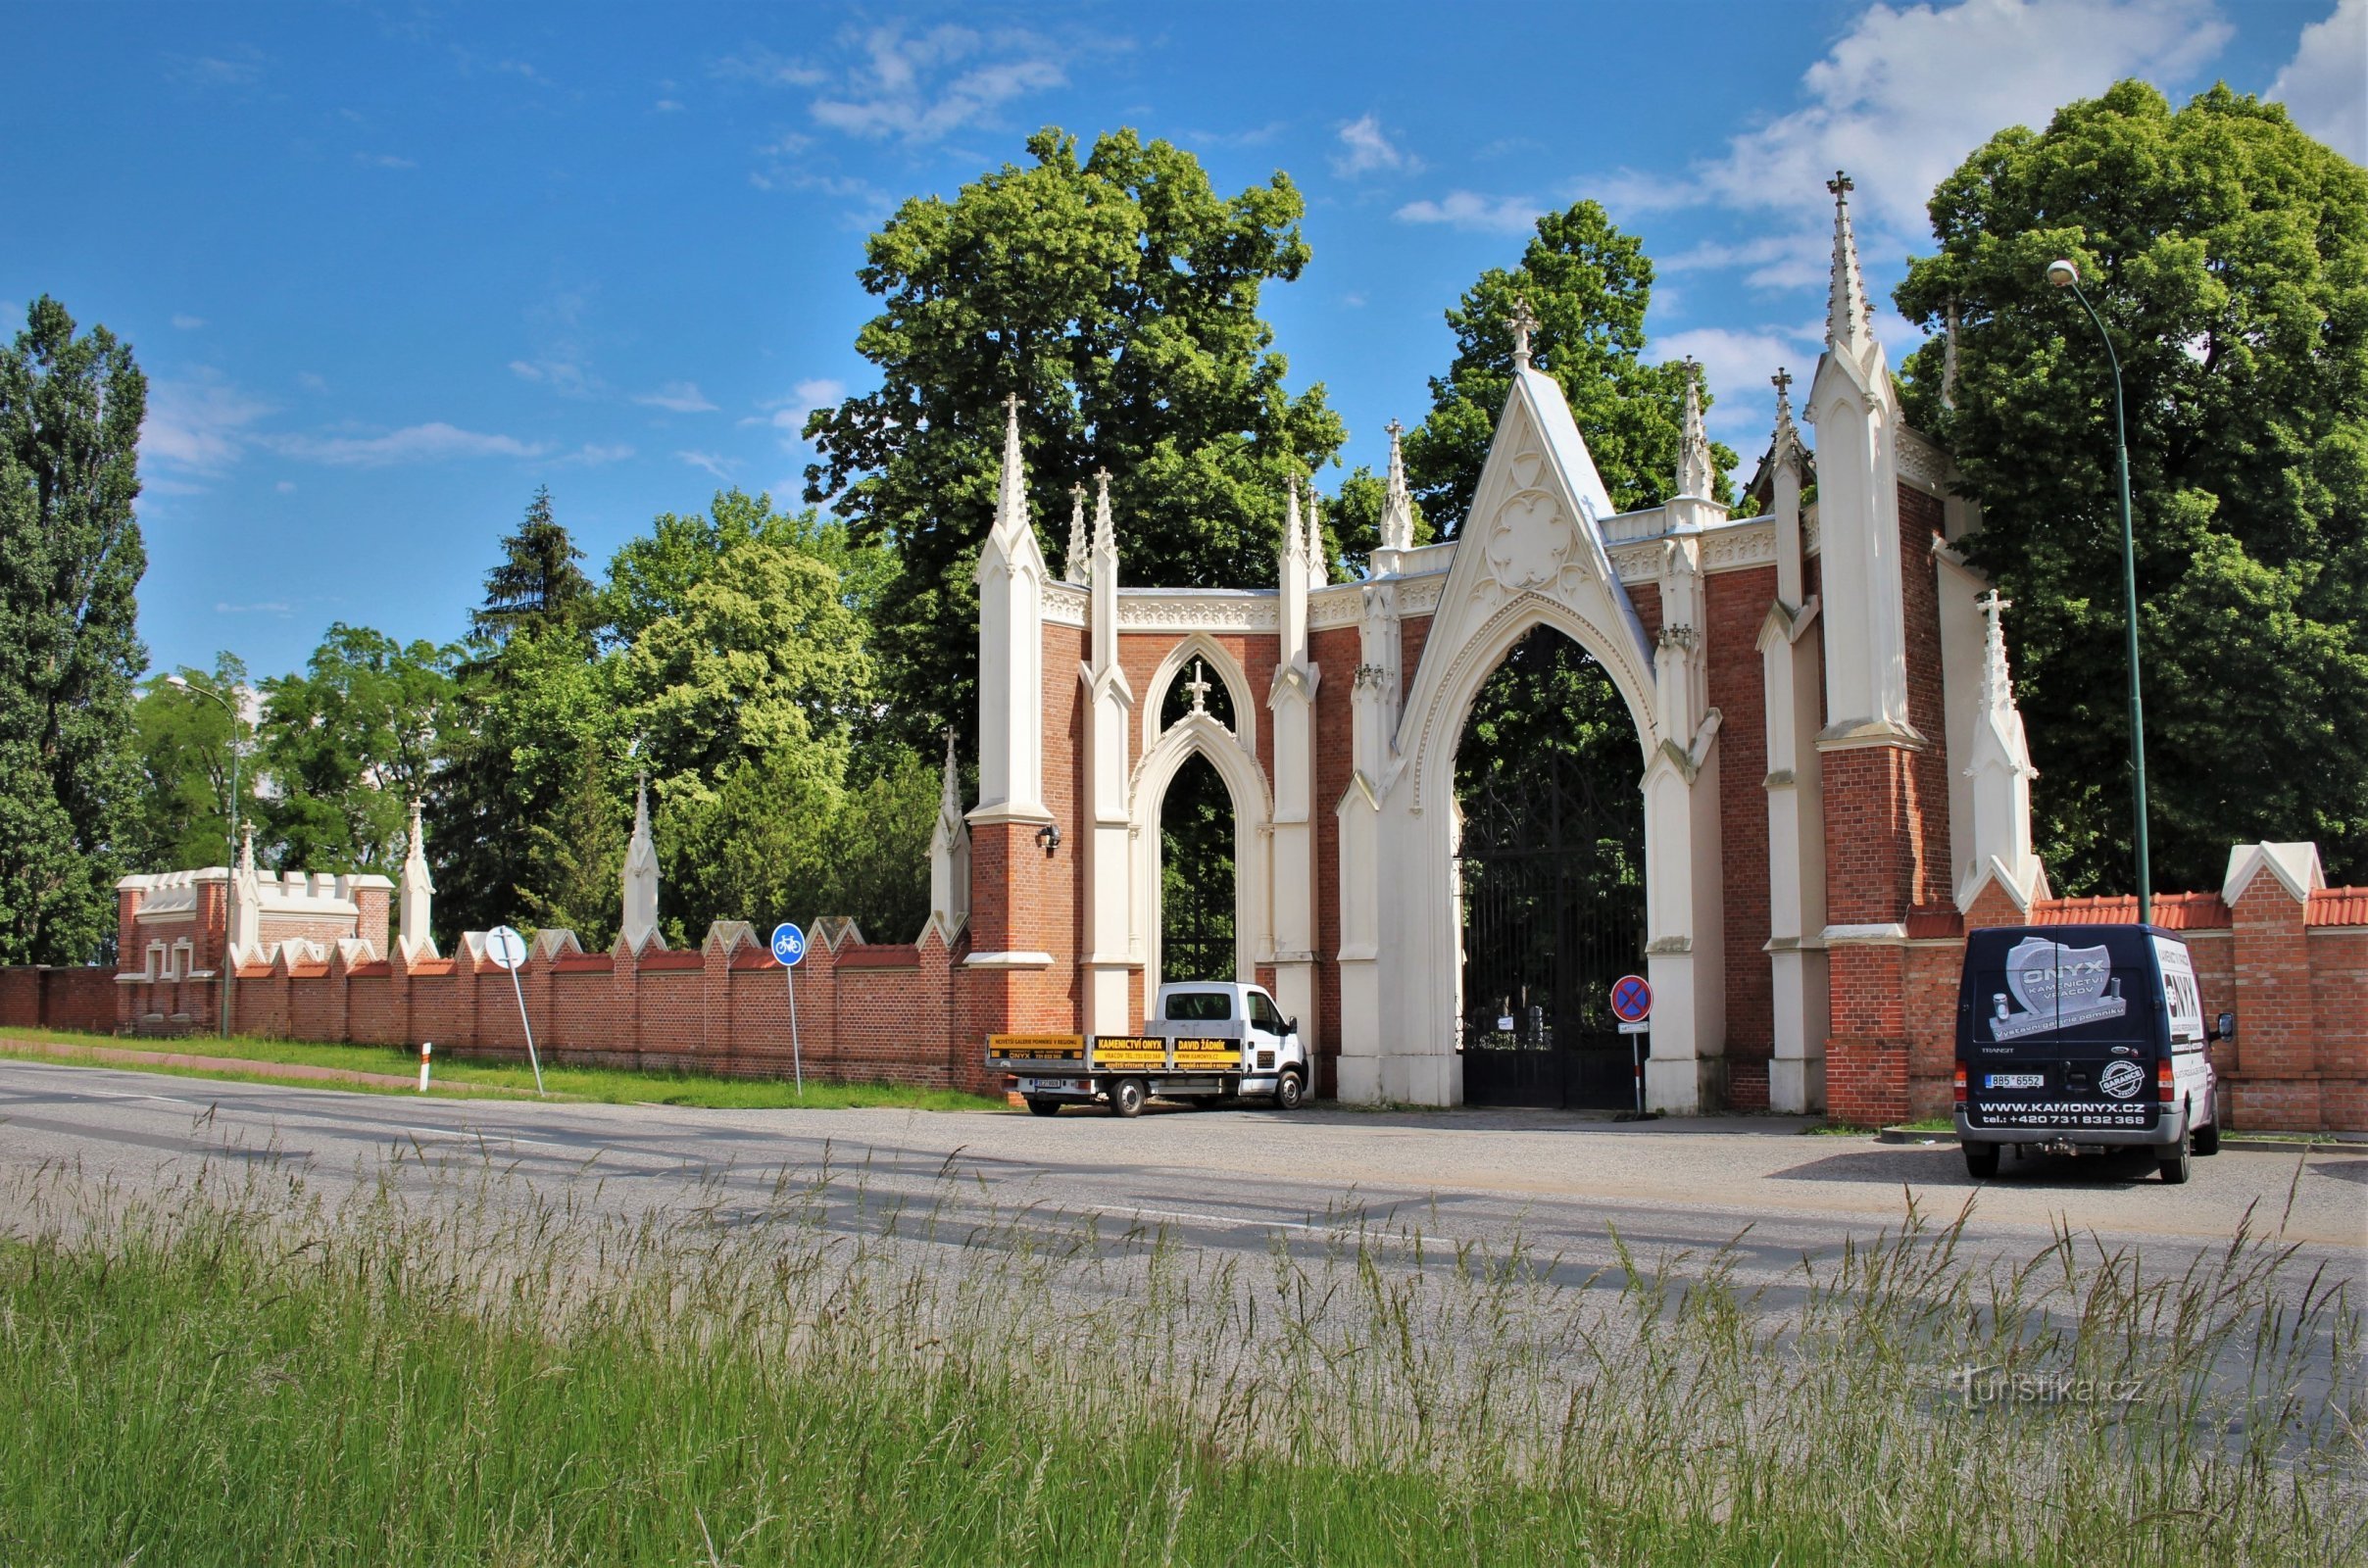 Portão de entrada do cemitério com muro